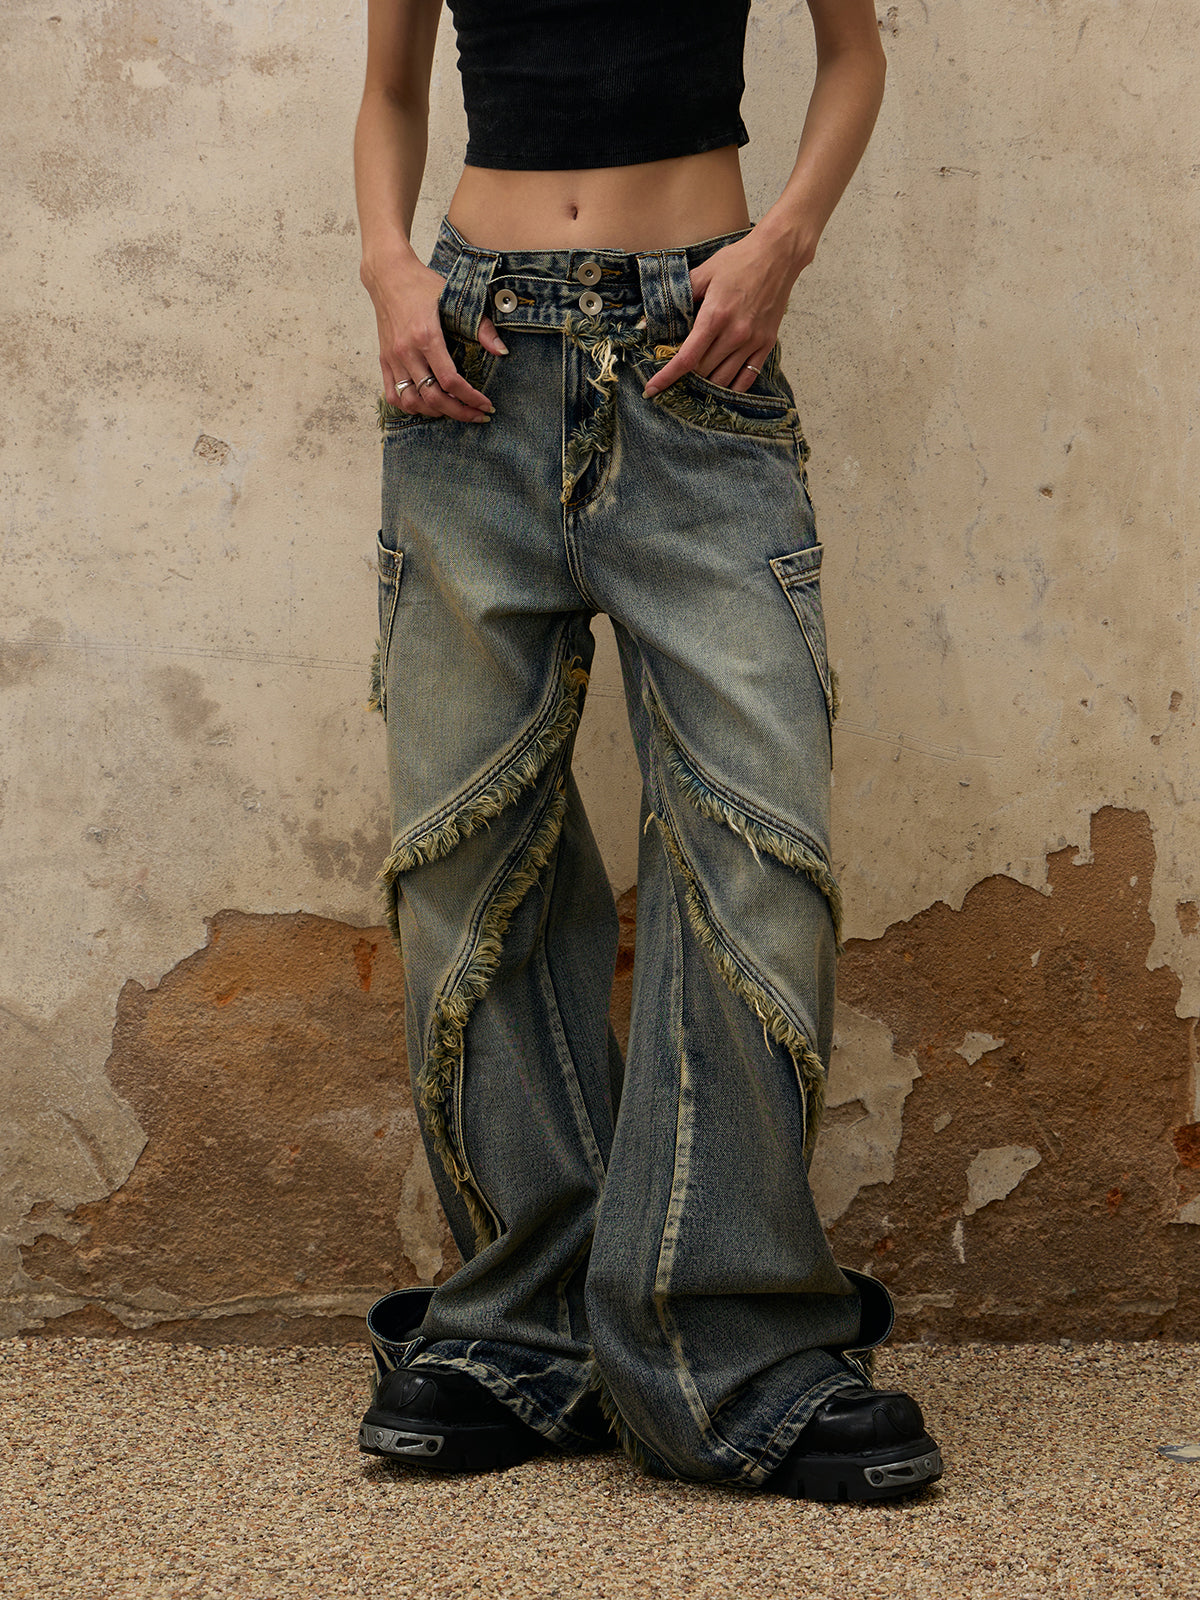 Personsoul Destructive Denim Jeans